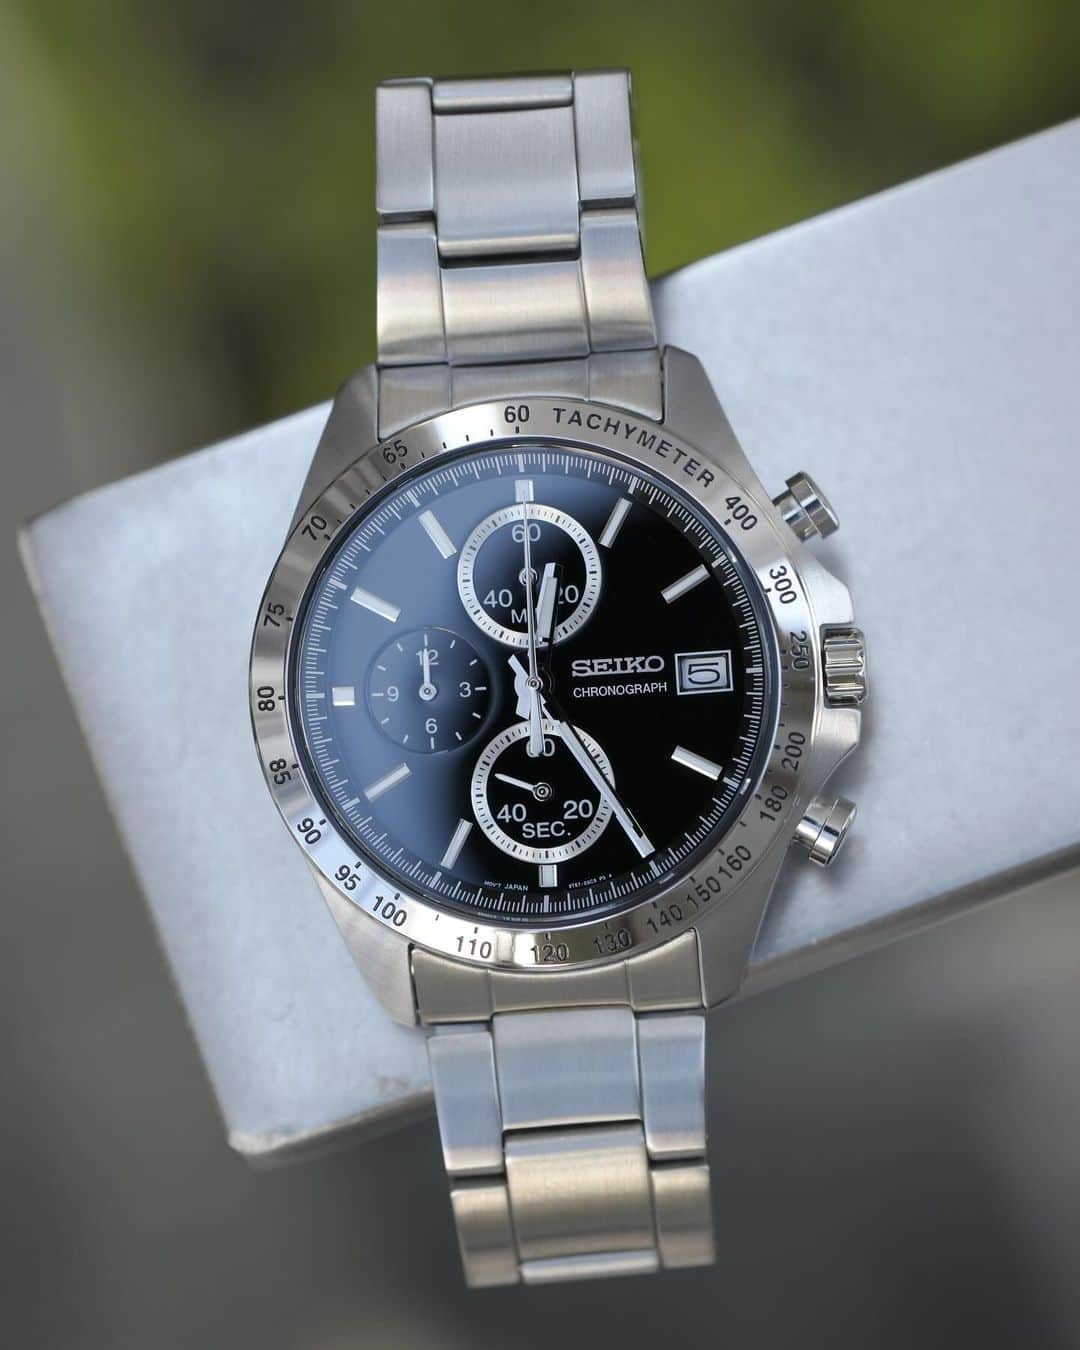 時計倉庫TOKIA 公式アカウントのインスタグラム：「⌚️ 【商品紹介】 SEIKO SBTR005  今回はSEIKOのお時計をご紹介します！ ビジネスマンやスーツを日常的に着用される方に人気のあるSEIKOのSPIRIT。スタンダードなよくあるデザインですが、それ故使いやすく幅広い世代の方におすすめできる時計です。 クロノグラフ、カレンダー、ストップウォッチ等便利な機能がたくさん付いていて機能性抜群なのが嬉しいです。針やインデックスの一部には蓄光加工が施されているので暗いところでも時間の確認が可能です。  大きさや実際の色味など、ぜひ店頭でお試しください！スタッフ一同、心よりお待ちしております🙇‍♀️  ……………………………………………………….................  ☟オンラインショップはプロフィールURLから☟ @tokia_official  ……………………………………………………….................  #時計倉庫 #時計倉庫tokia #腕時計 #watch #手表 #腕元倶楽部 #腕時計好きな人と繋がりたい #seiko #seikowatch #seikospirit #セイコー」